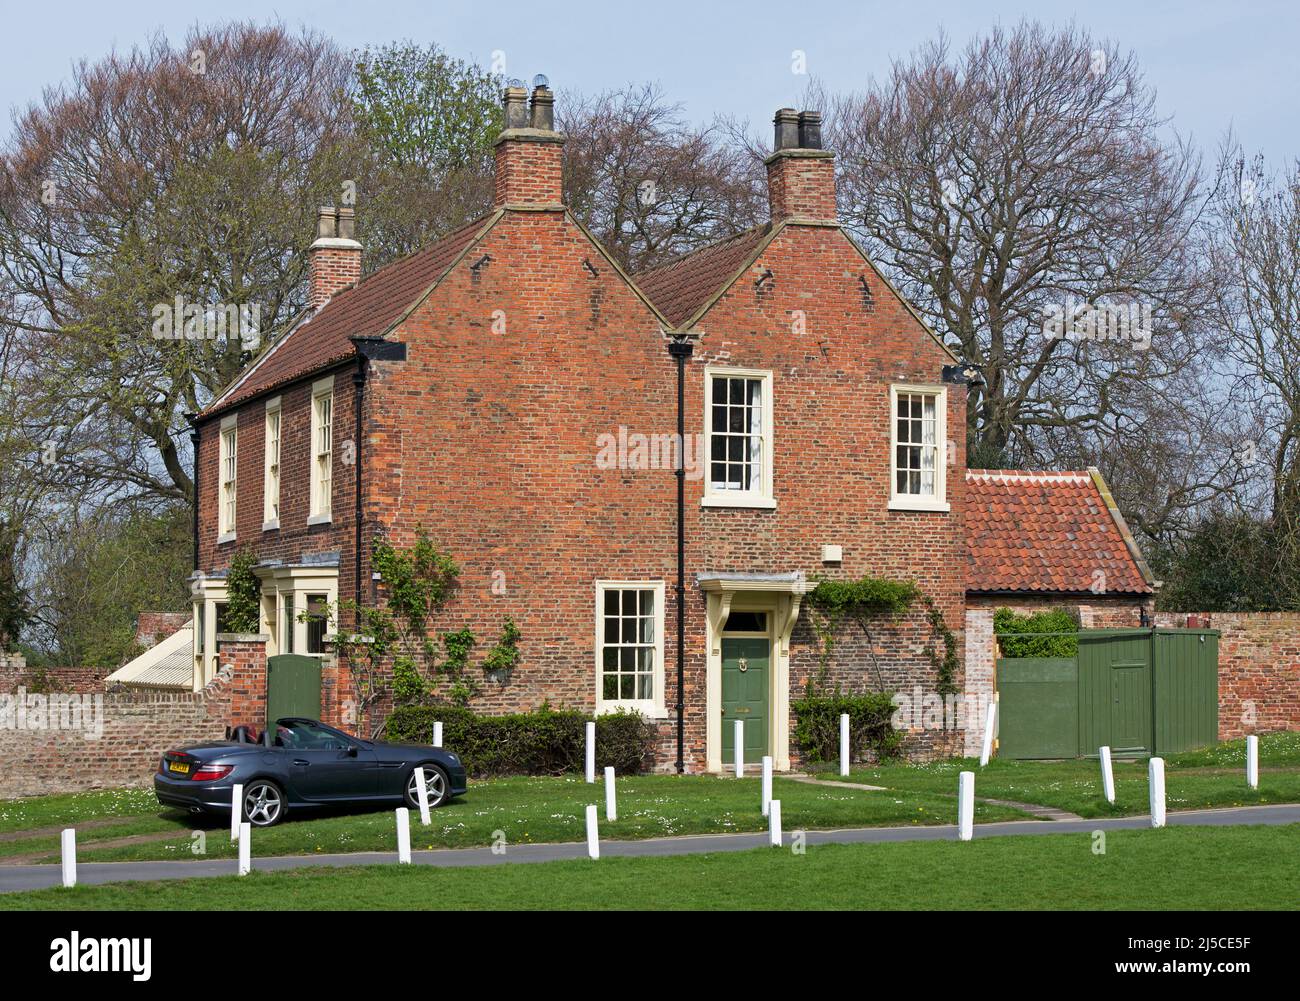 Maison à Hedon, avec voiture garée, East Yorkshire, Angleterre Royaume-Uni Banque D'Images